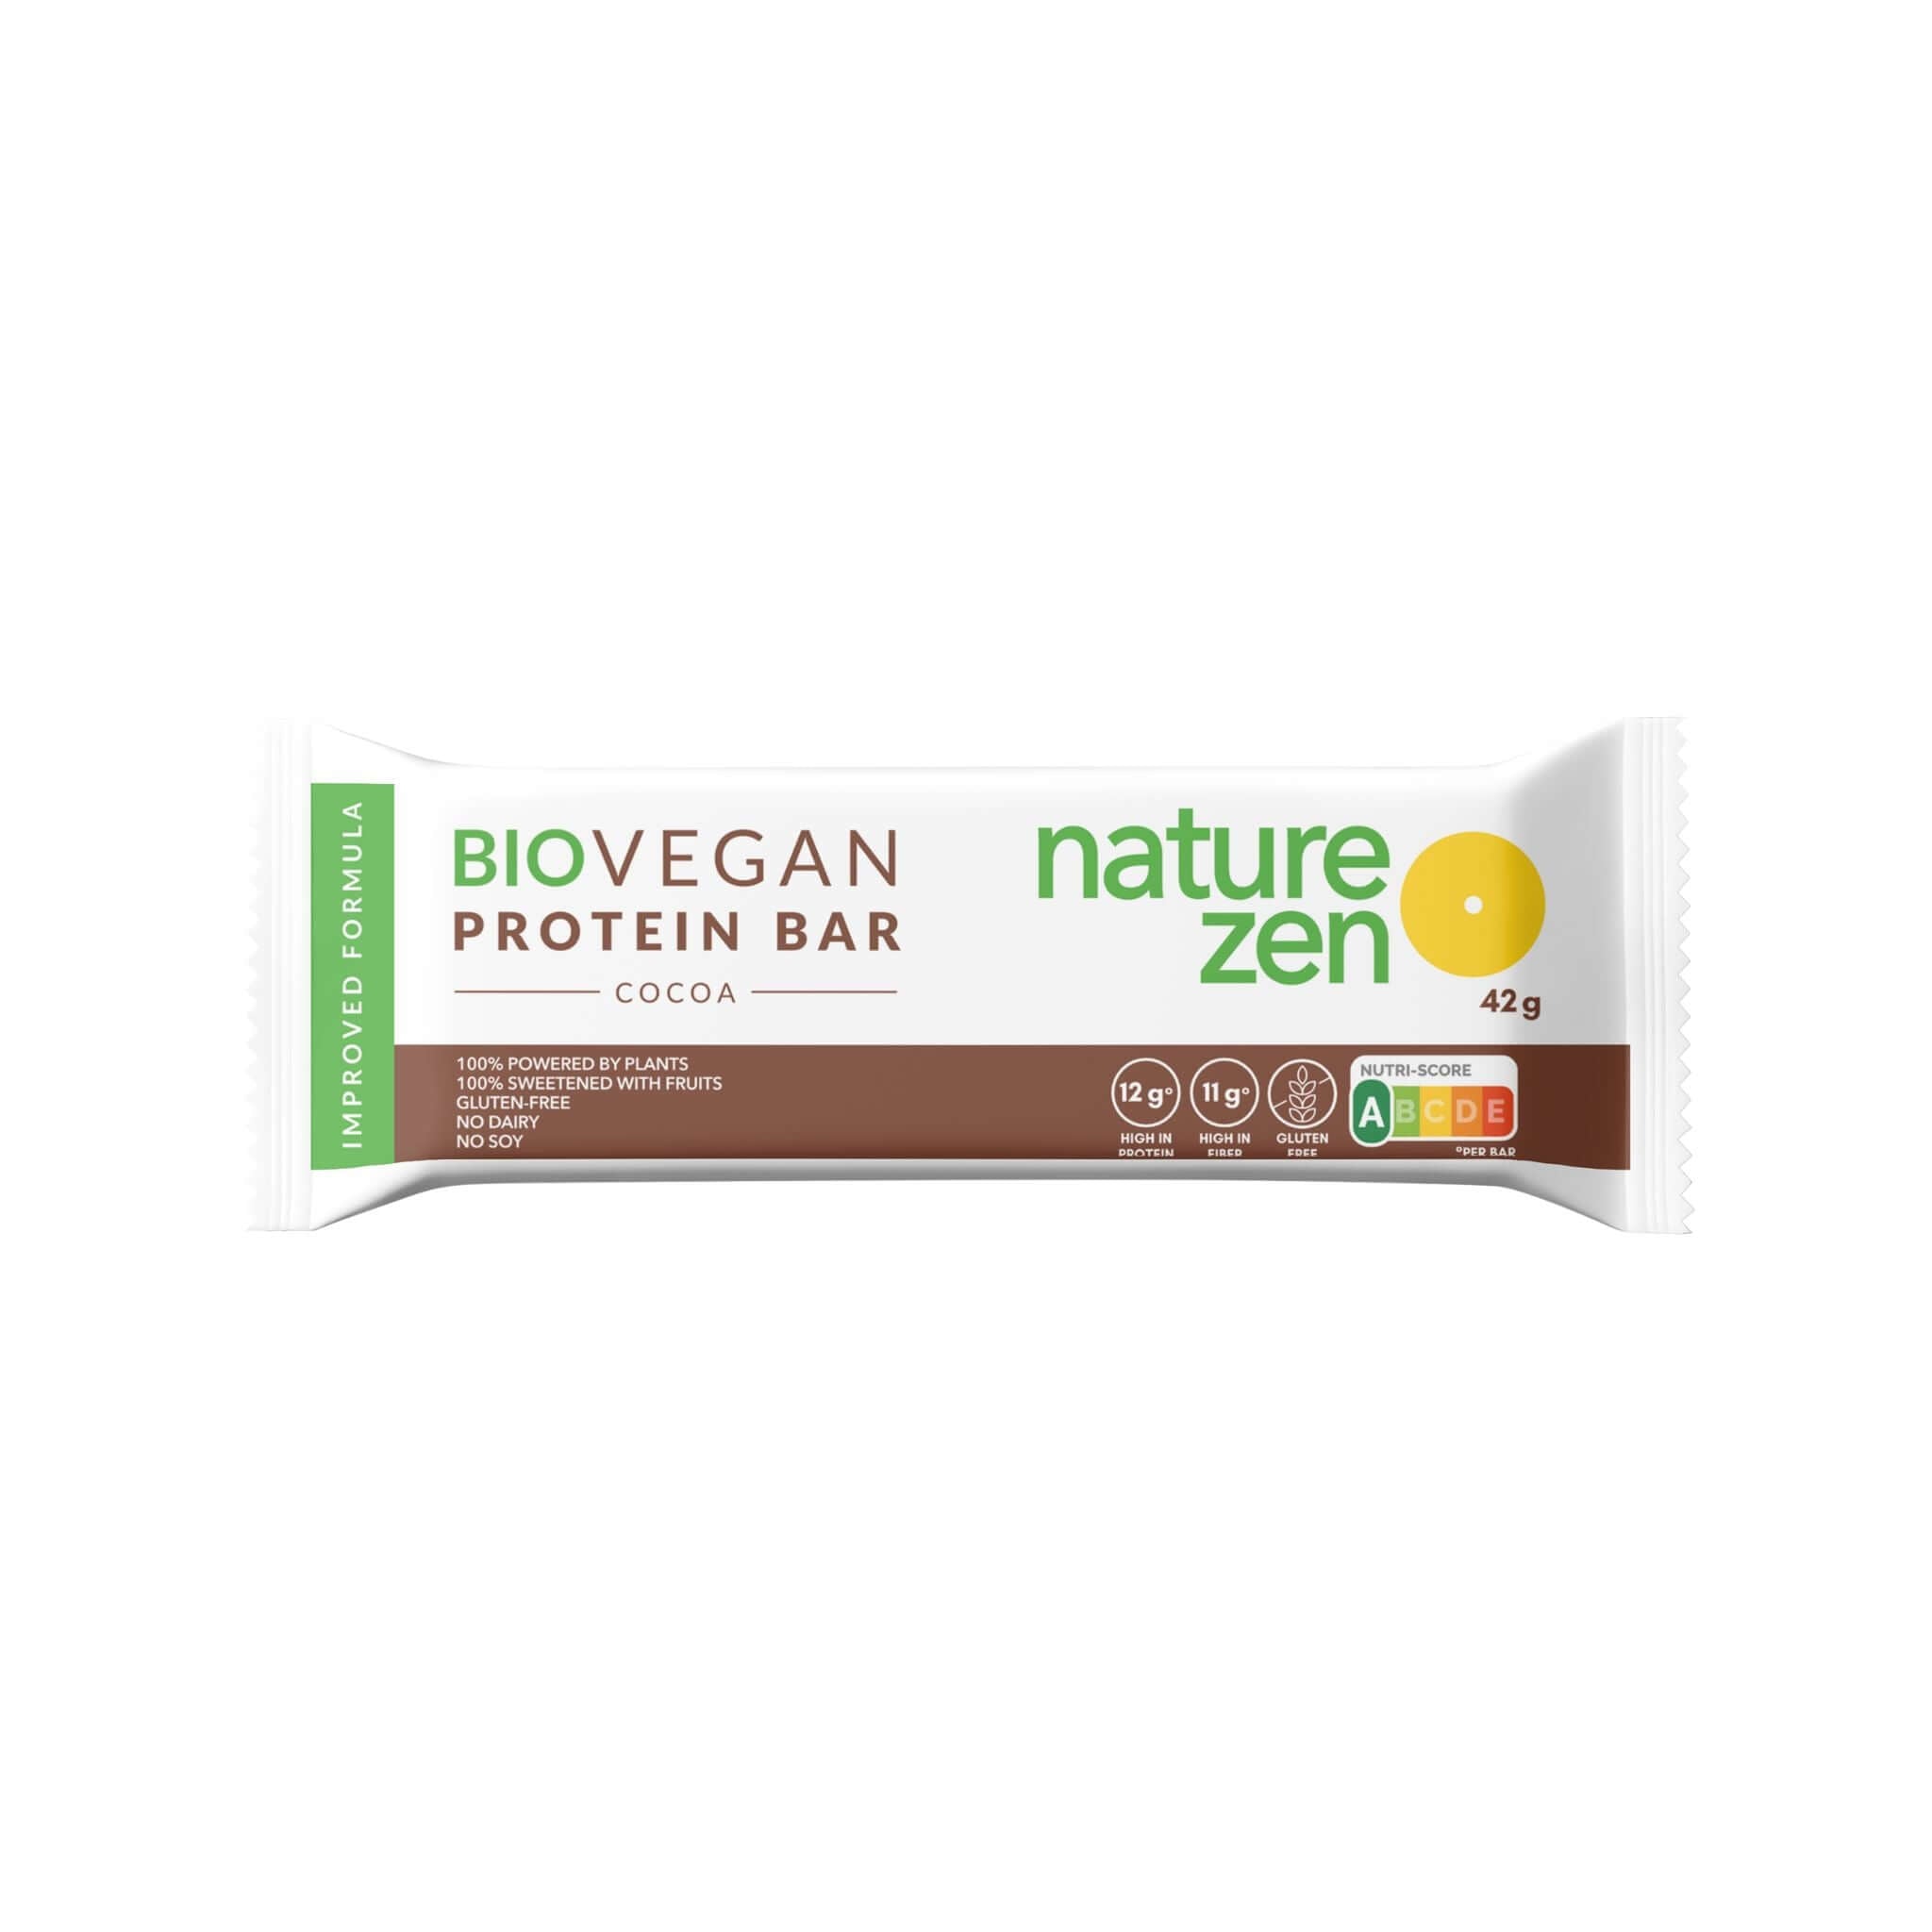 Nature Zen Organic Vegan Protein bars - Chocolate [New Recipe] bar only